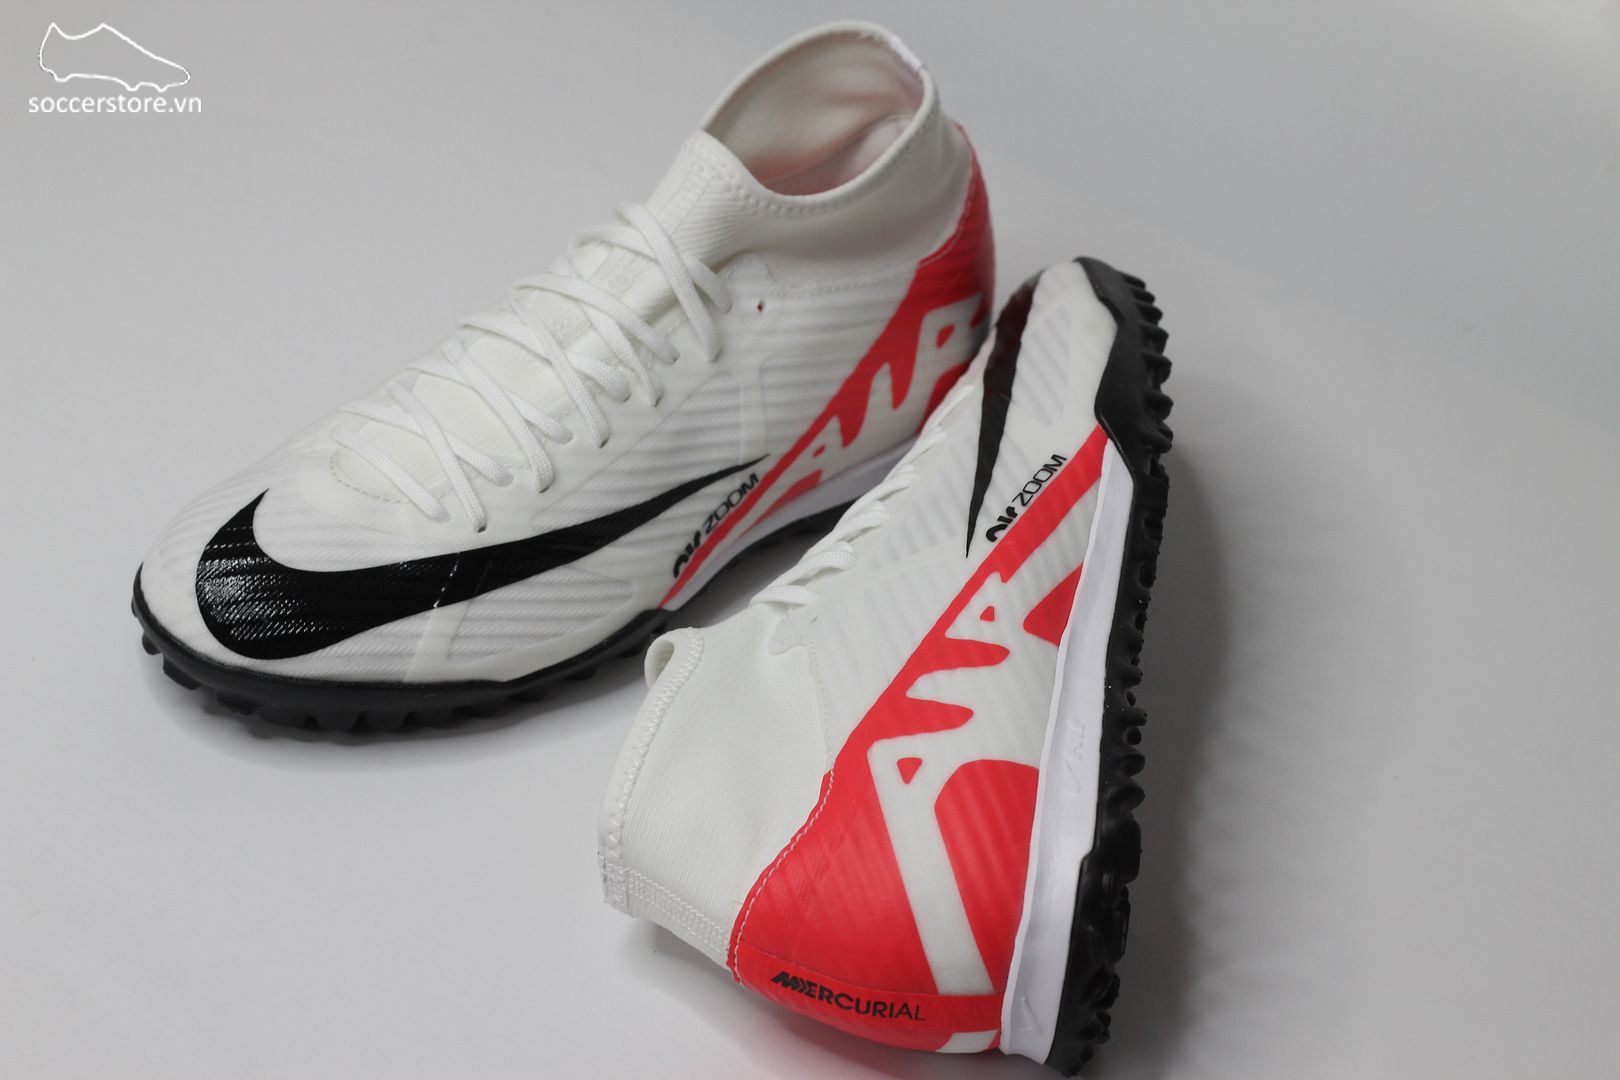 Nike Mercurial Superfly 9 Academy TF Air Zoom Ready pack màu trắng đỏ DJ5629-600